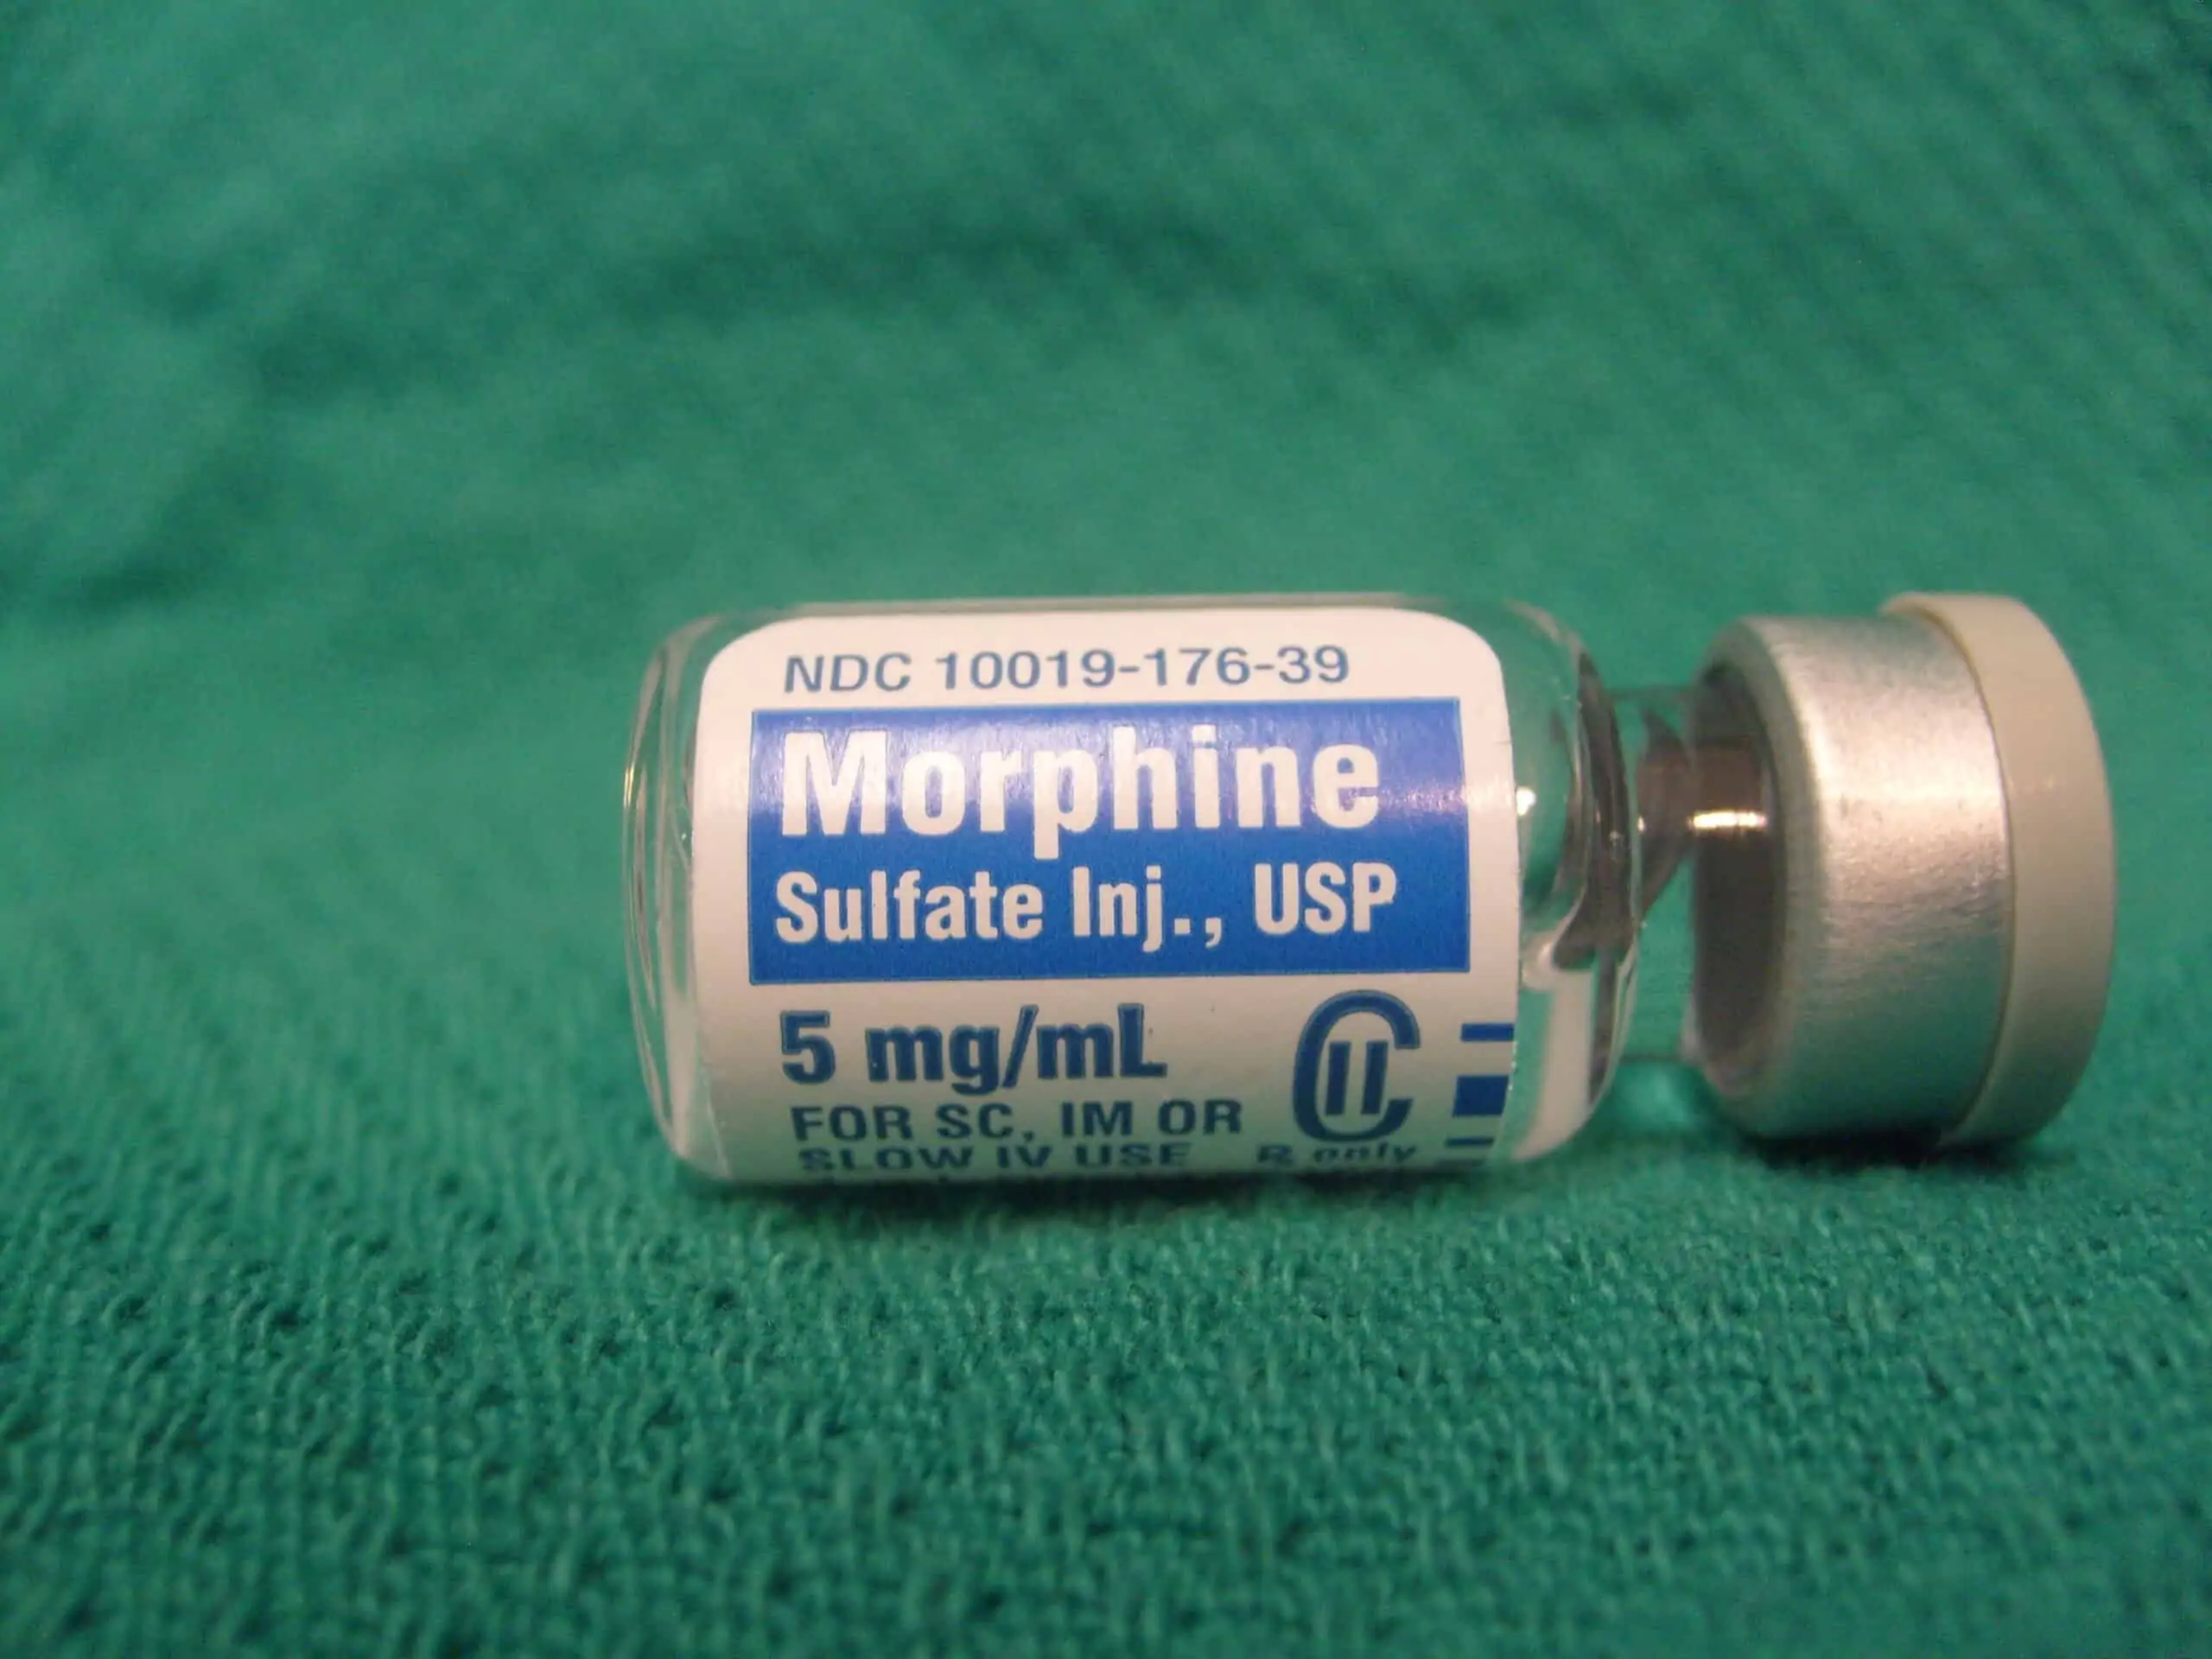 Morphine_vial